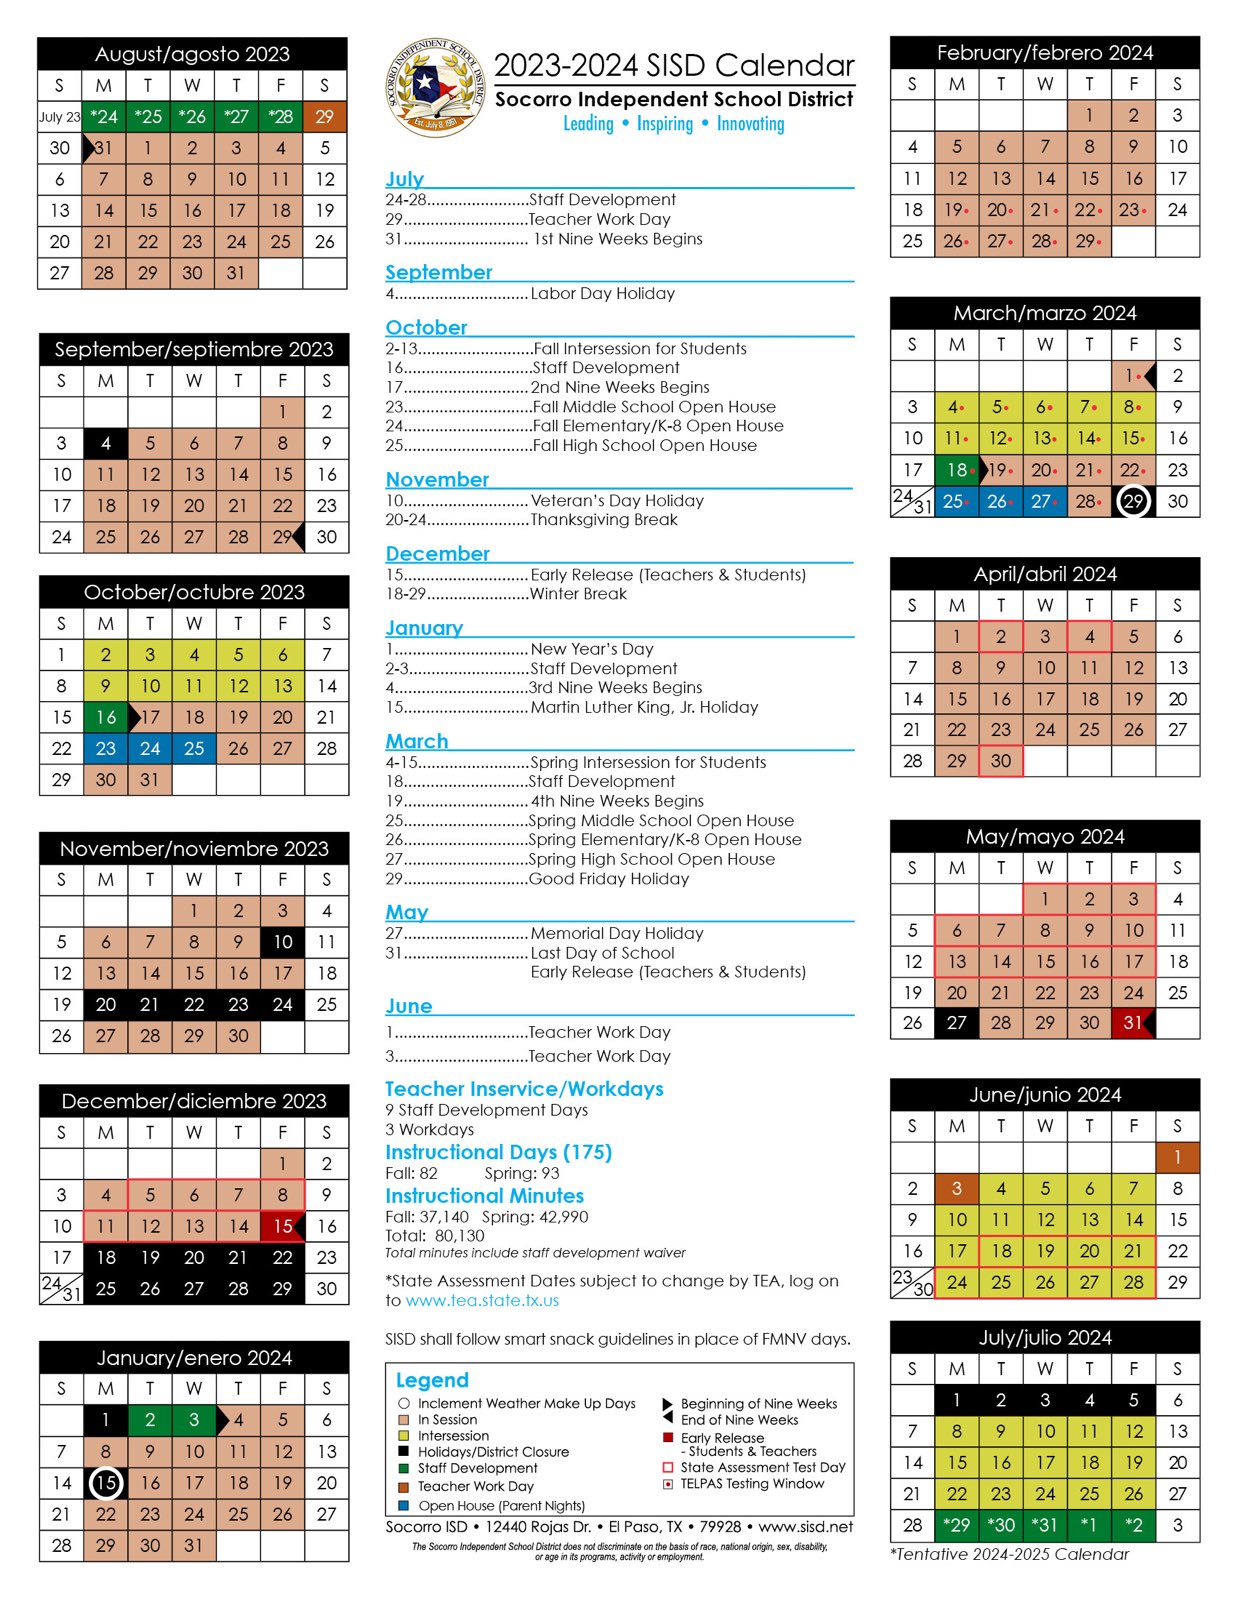 sisd-calendar-2023-2024-get-calendar-2023-update